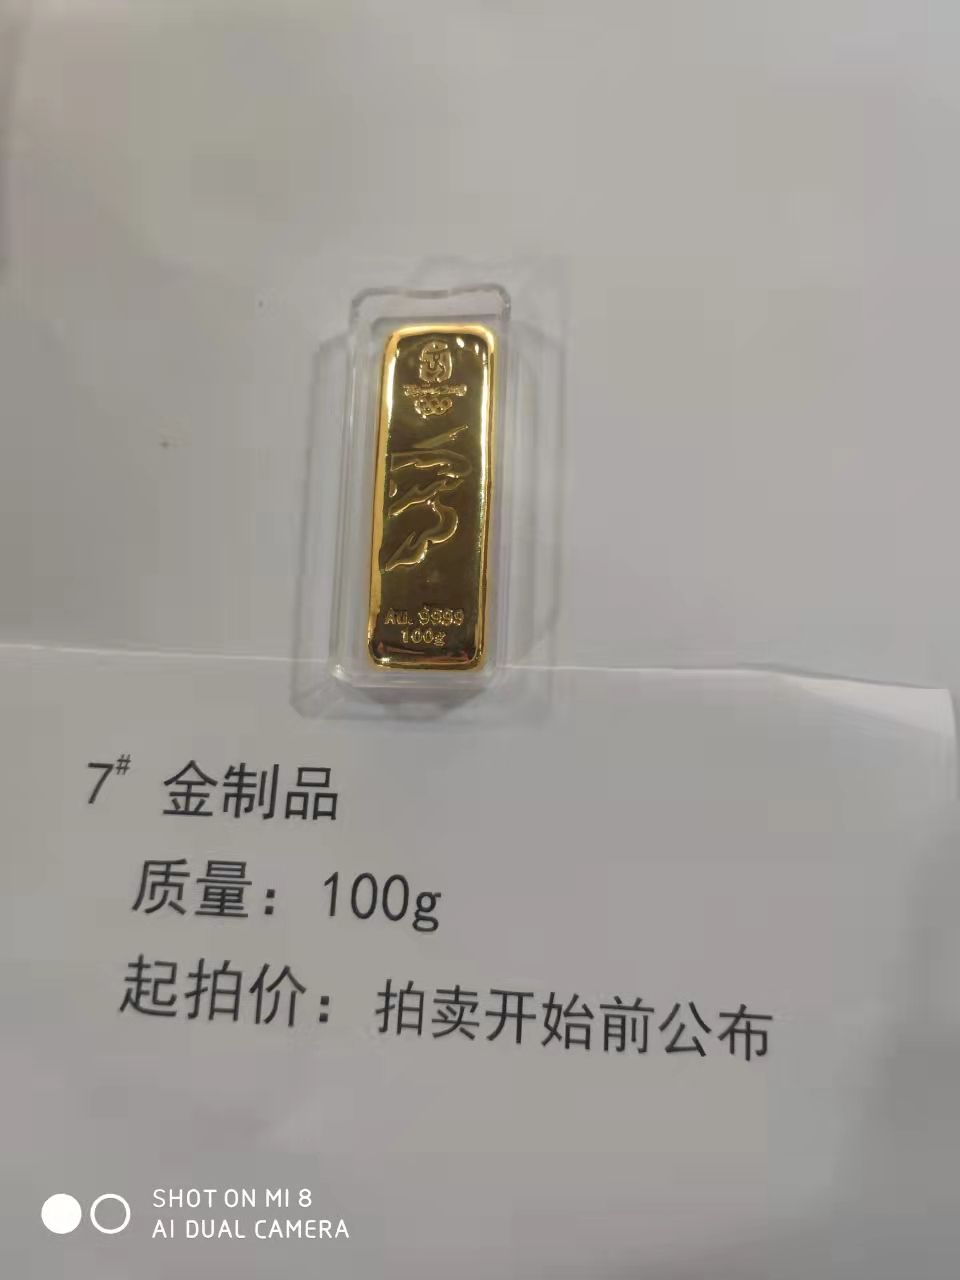 7金制品100g-辽宁省拍卖行